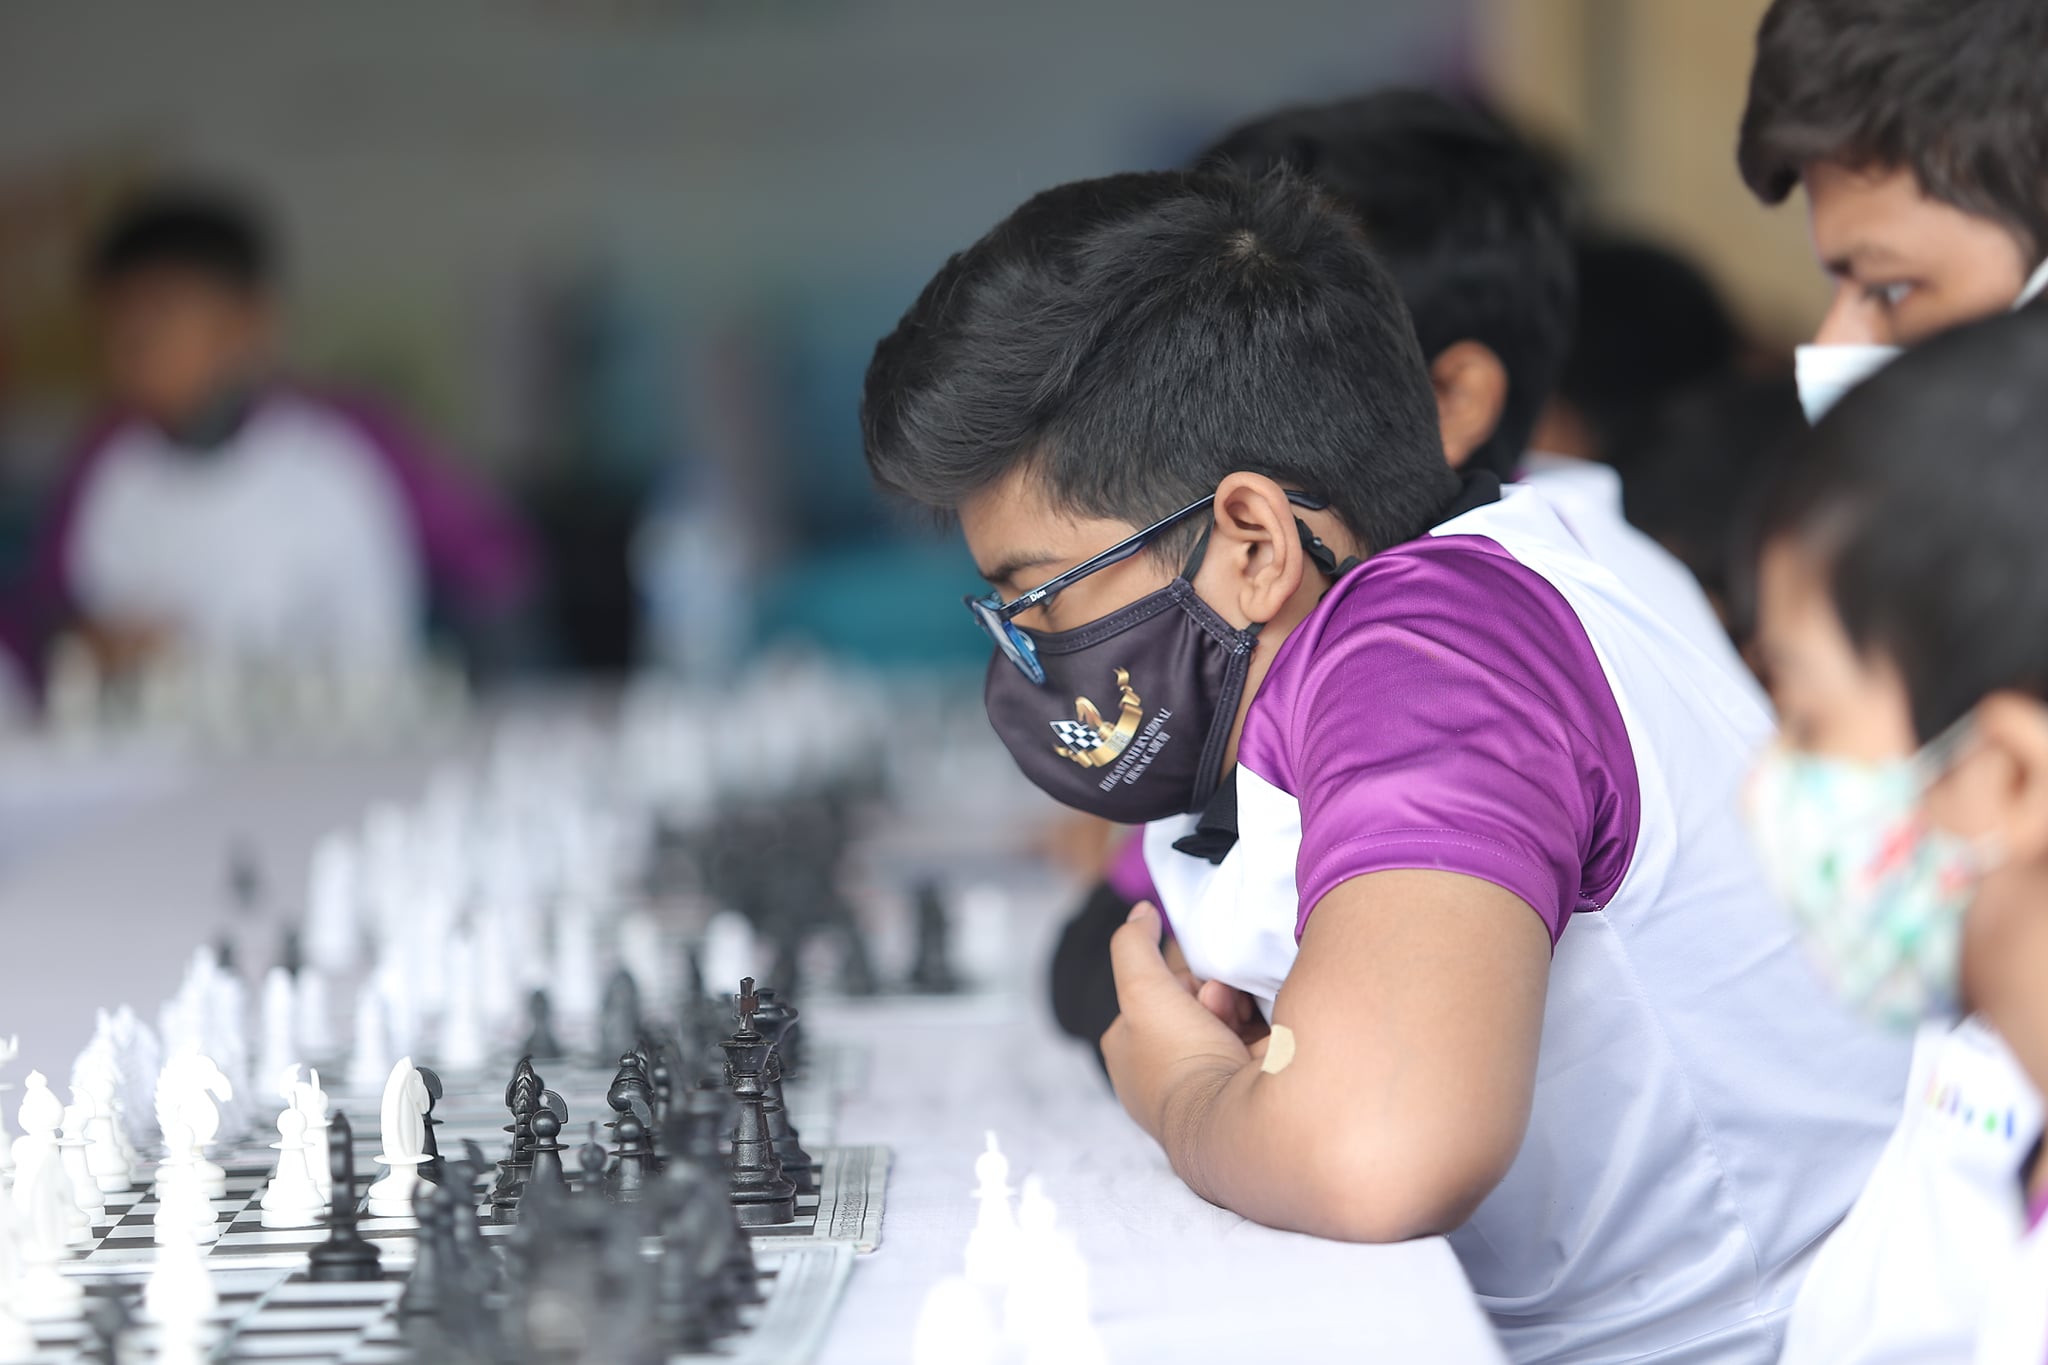 Dotlines group holds carnival chess festival